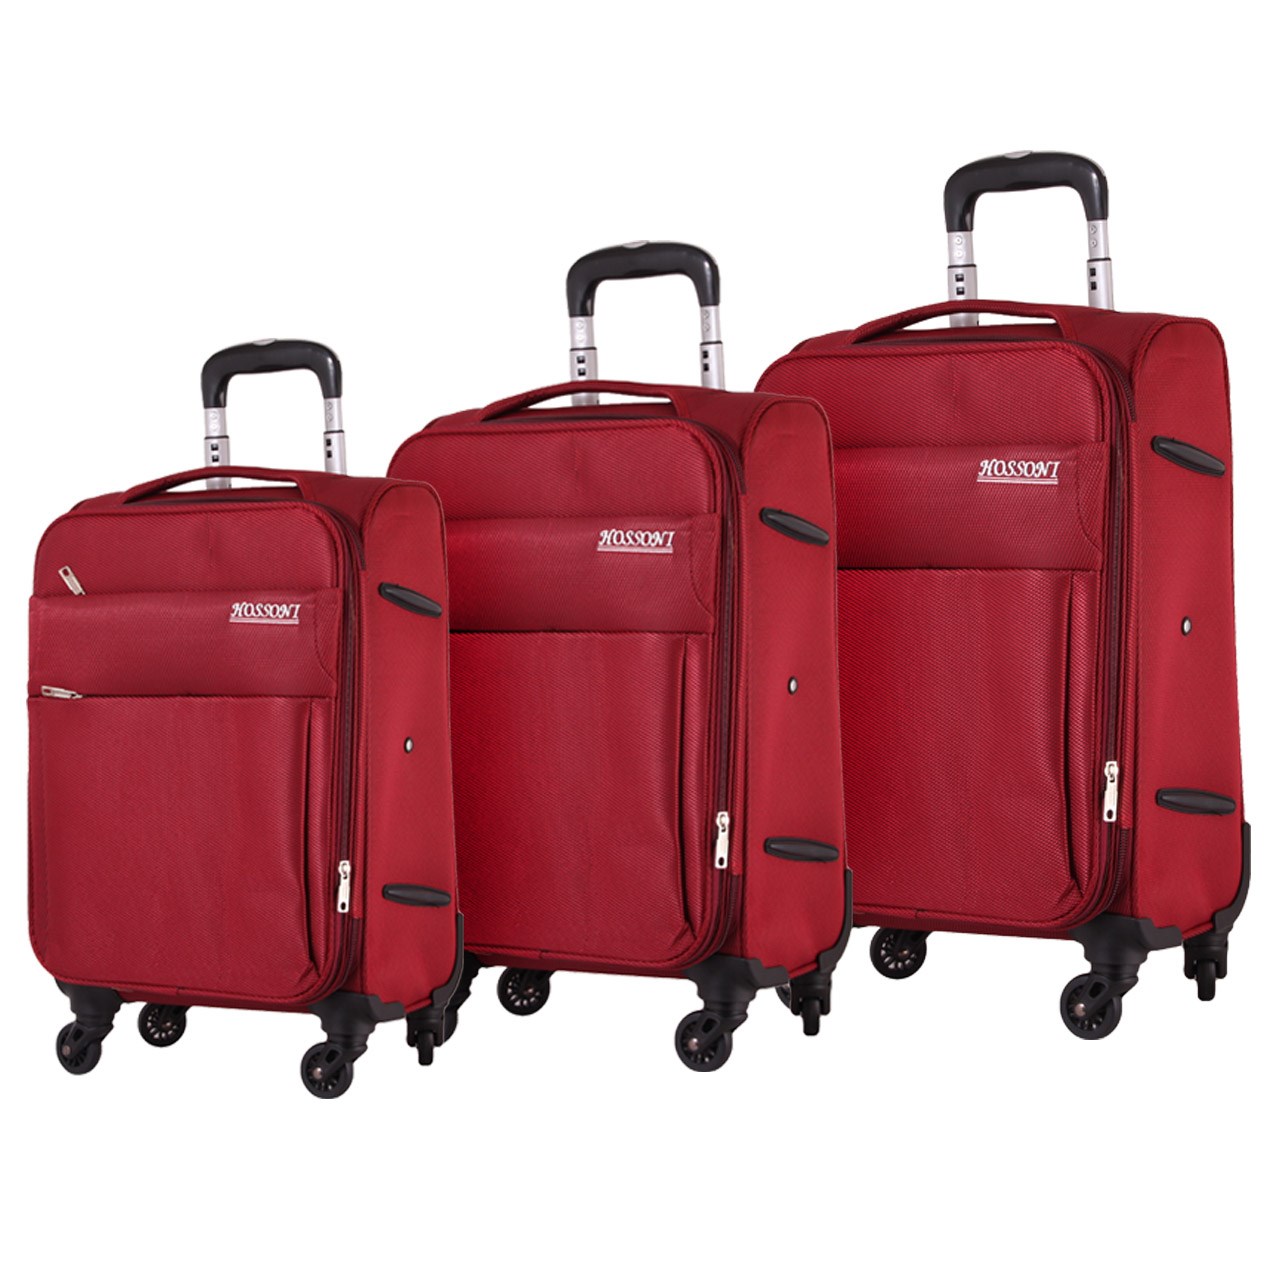 مجموعه سه عددی چمدان هوسنی مدل 7-8020